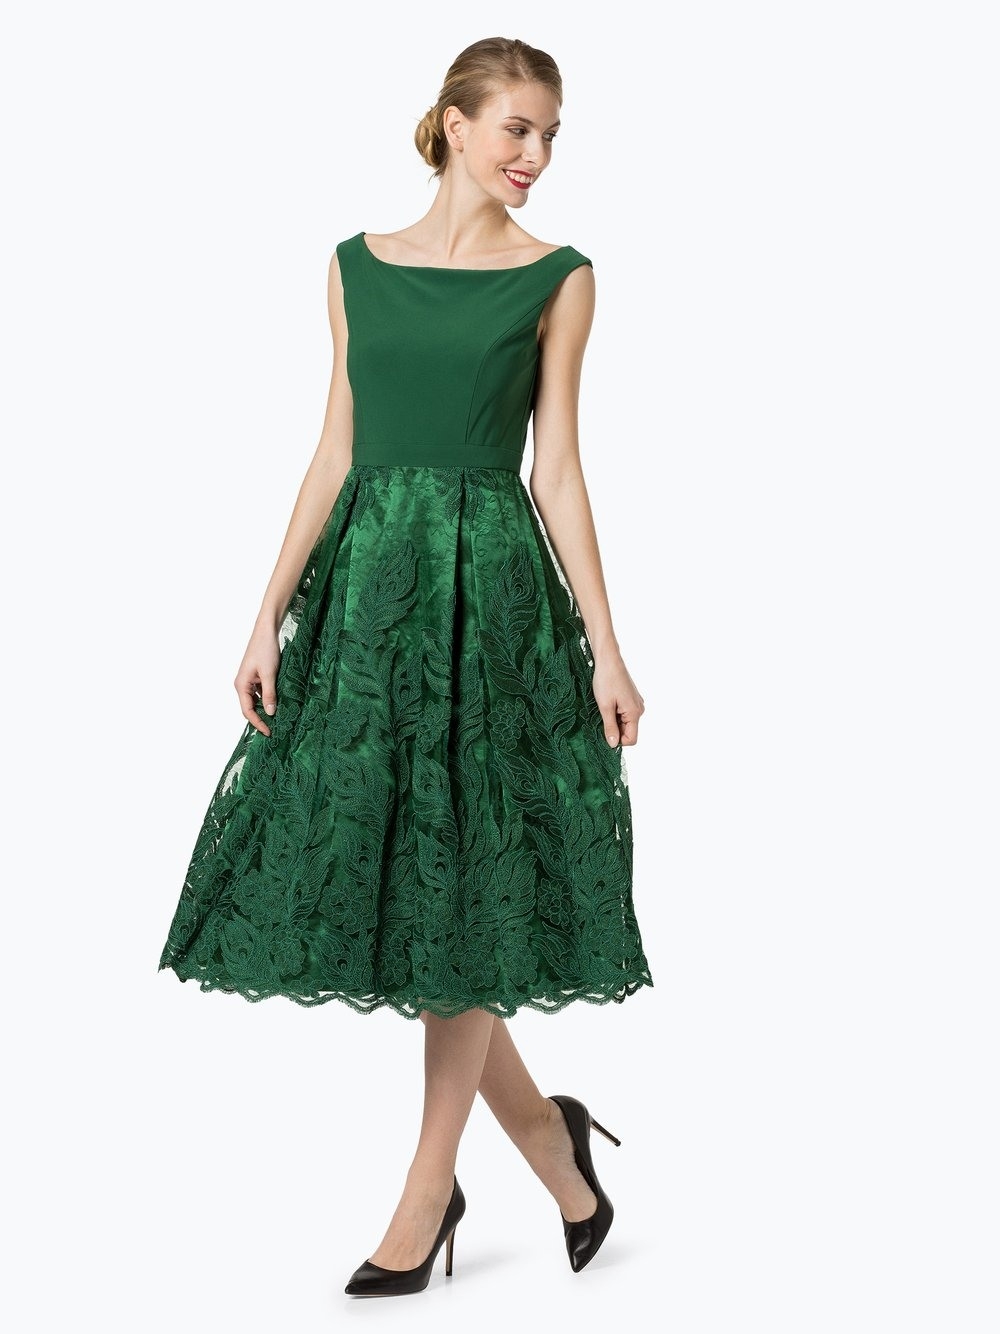 10 Fantastisch Abendkleid Grün Vertrieb20 Luxurius Abendkleid Grün Design